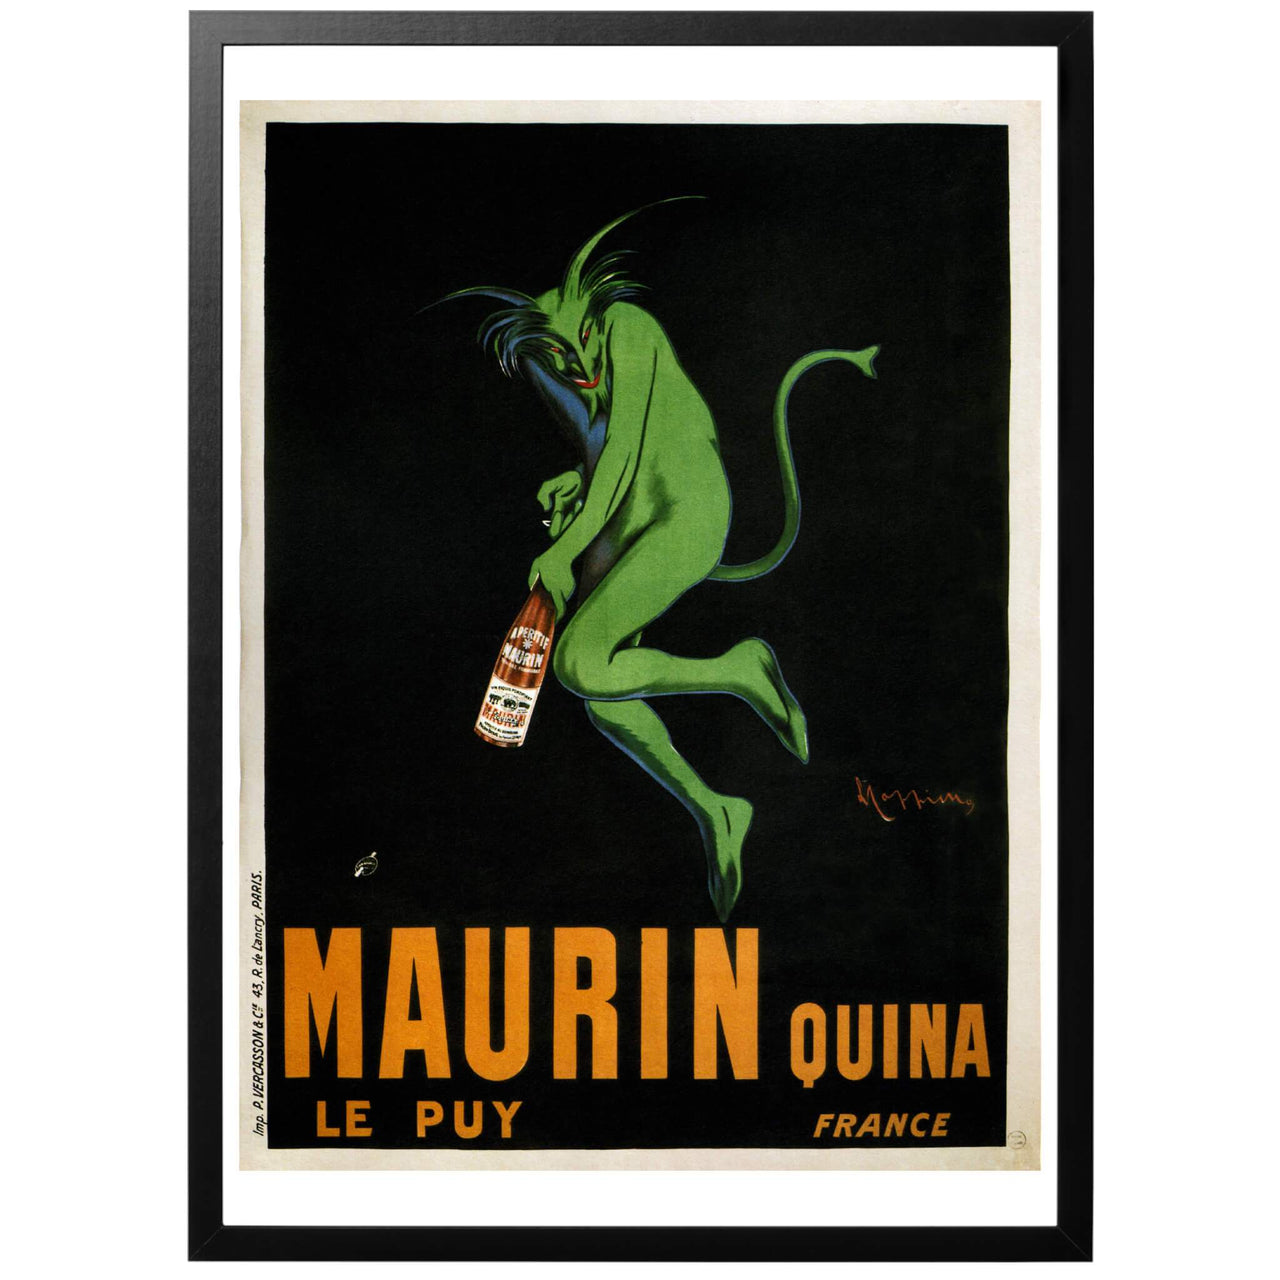 En klassisk affisch av Leonetto Cappiello, för den franska likören Maurin Quina. Cappiello var en sann pionjär och kom att ha en enorm påverkan i formandet av reklam i tryckt form.  Just denna poster skapade han 1906, den gröna djävulen ger intrycket att att det rör sig om absint, något som dock är felaktigt.